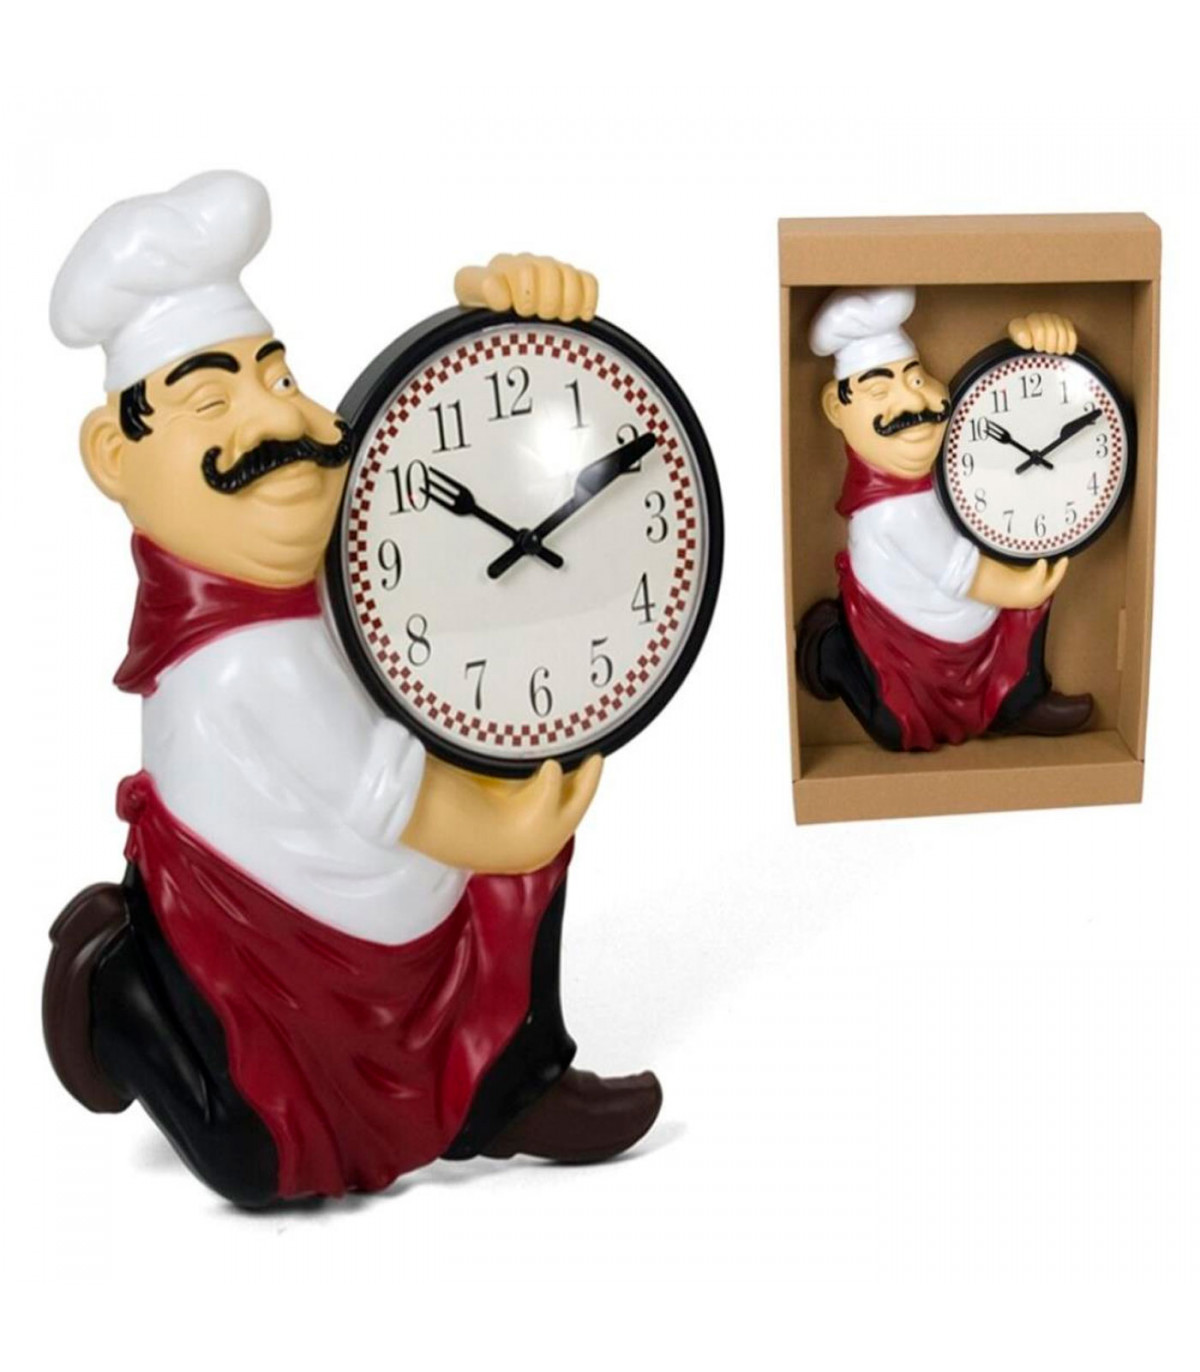 Tradineur - Reloj de mesa cocinero de plástico, funciona con pila